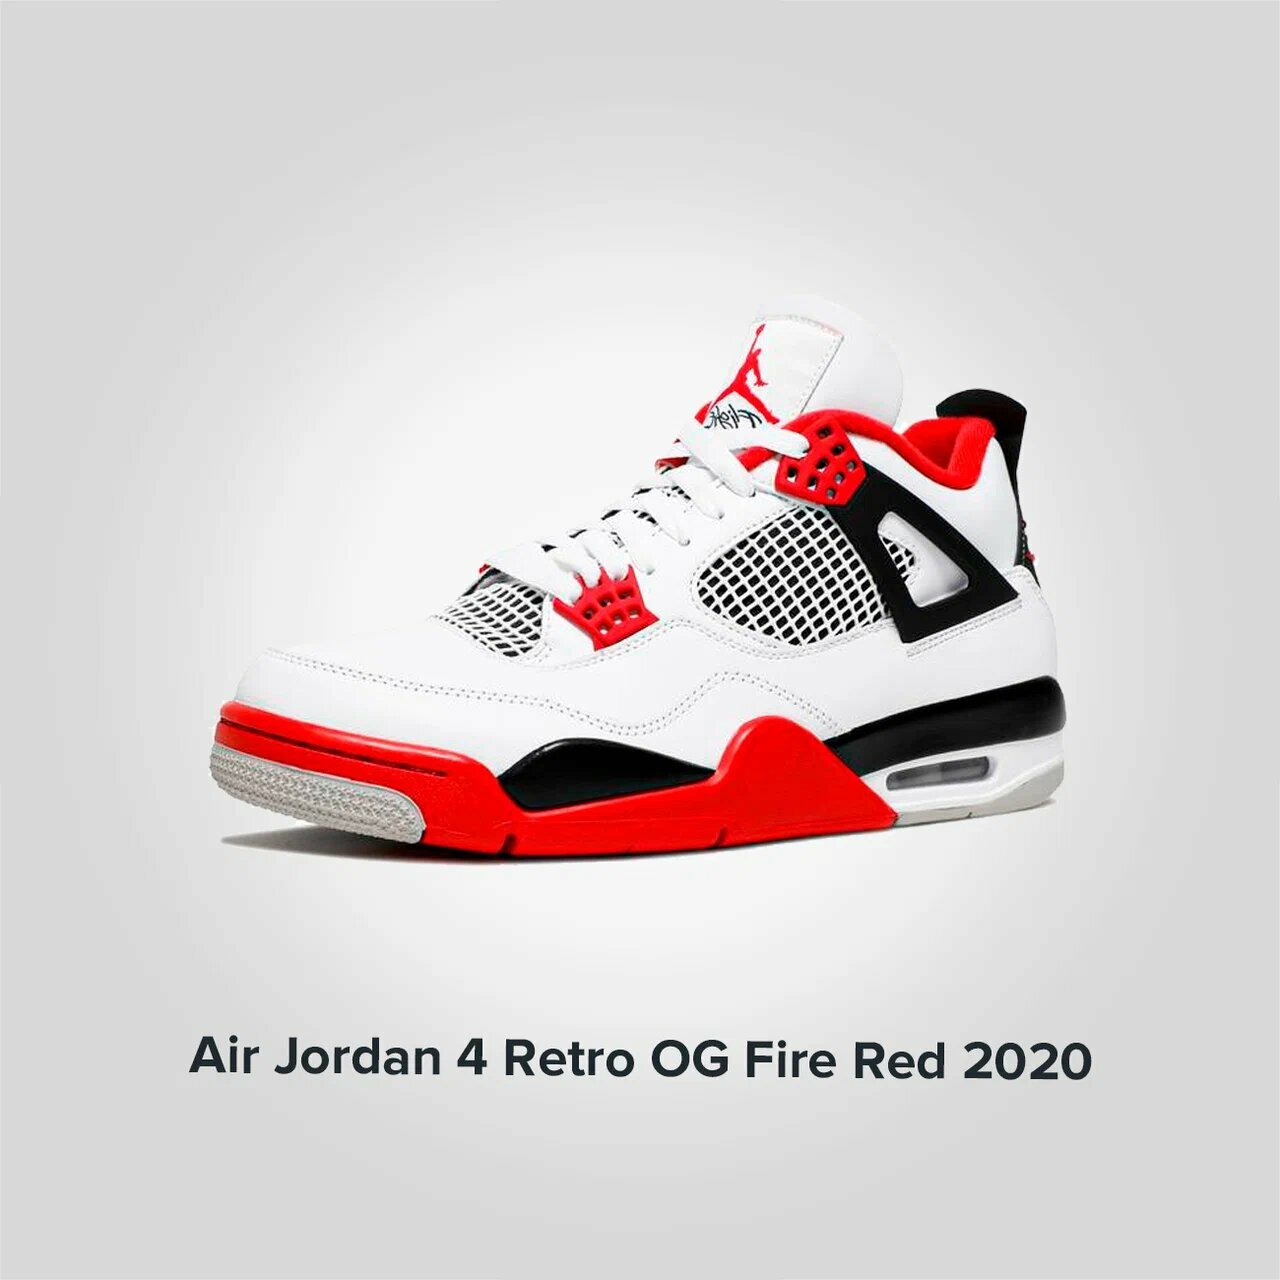 Jordan 4 Retro OG Fire Red 2020